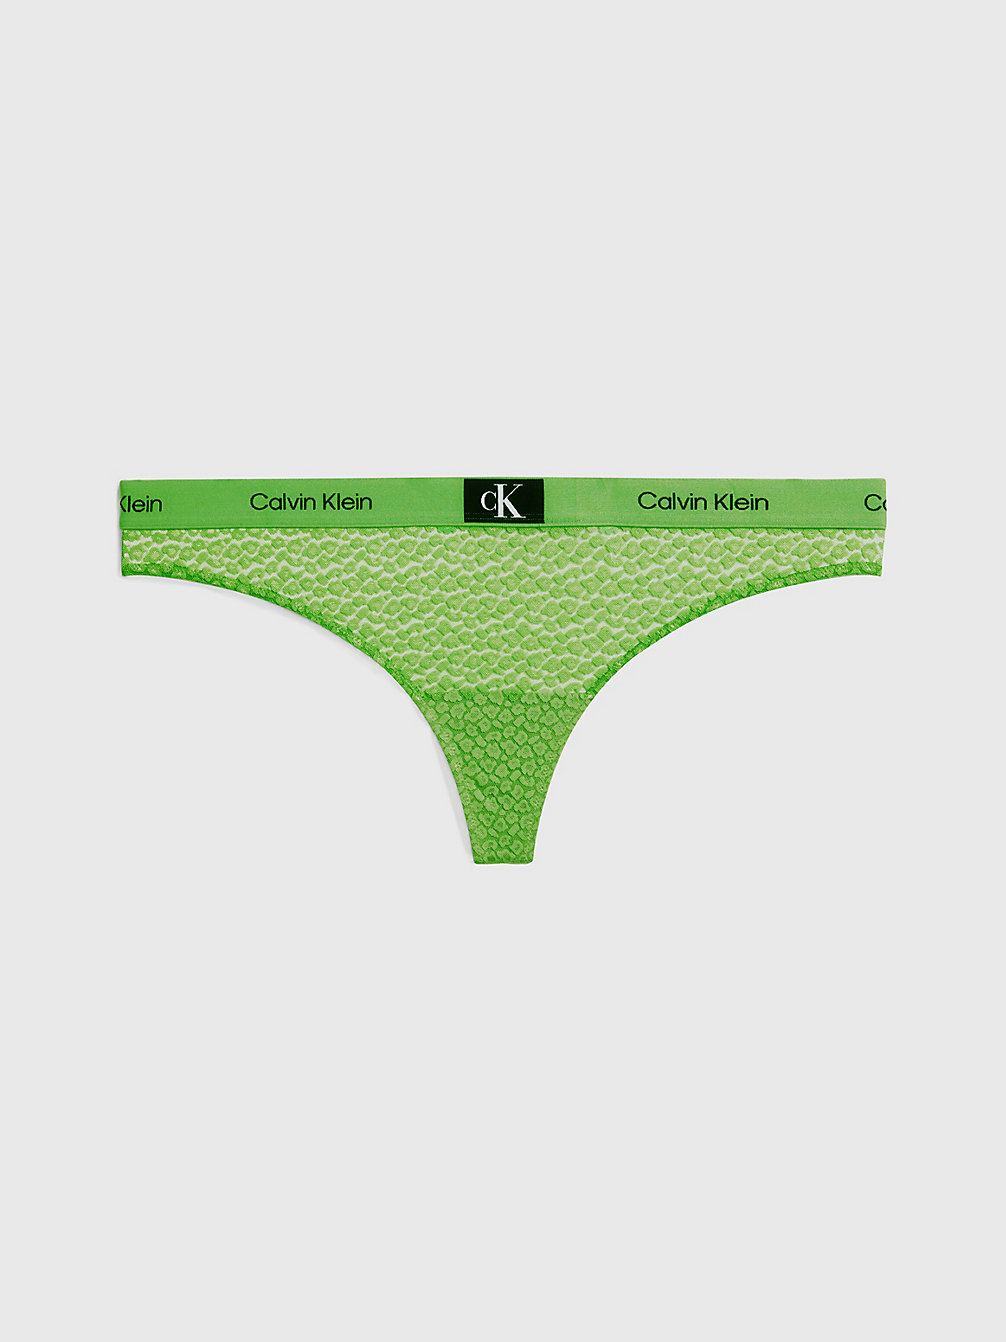 FABULOUS GREEN String In Großen Größen - Ck96 undefined Damen Calvin Klein